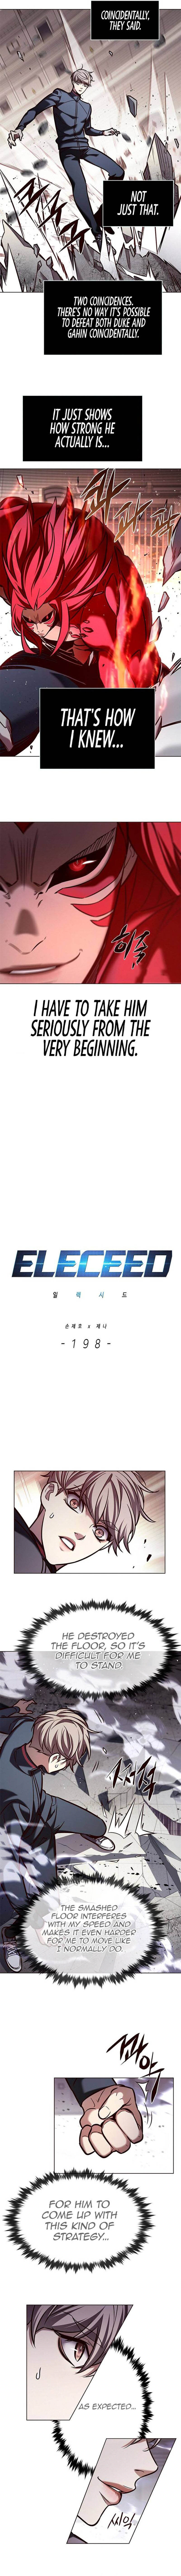 eleceed_198_2